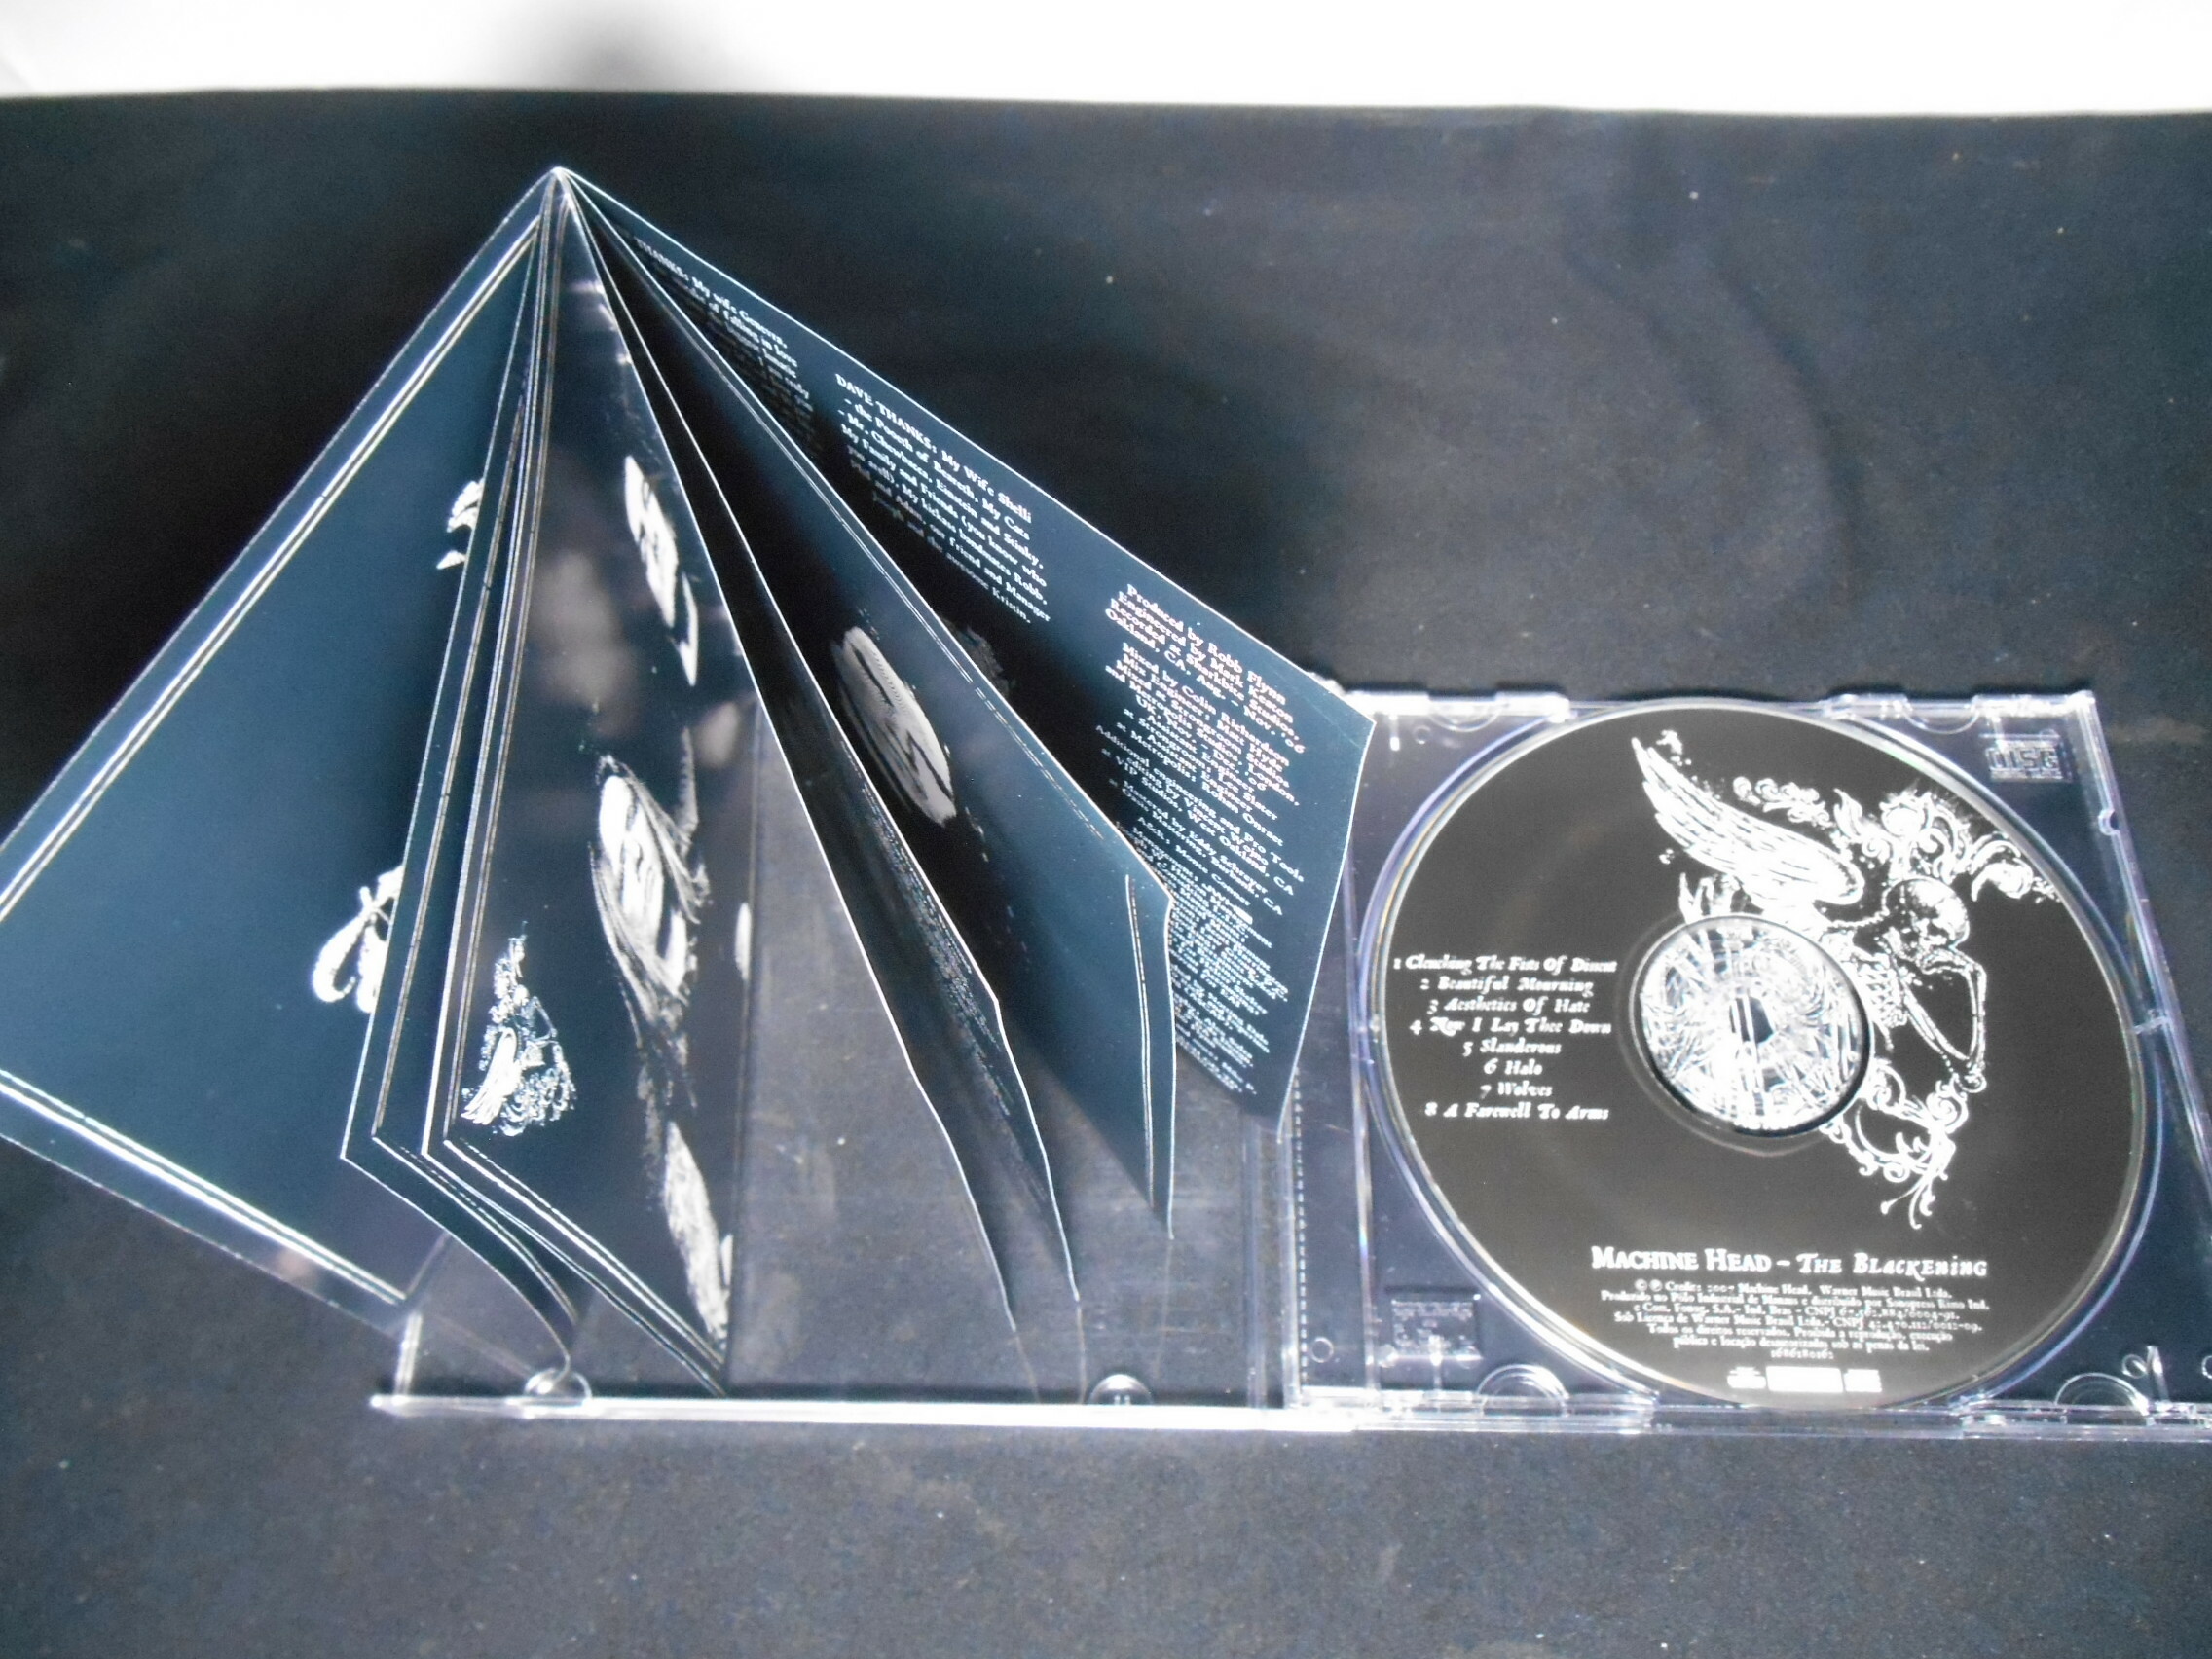 CD - Machine Head - The Blackening